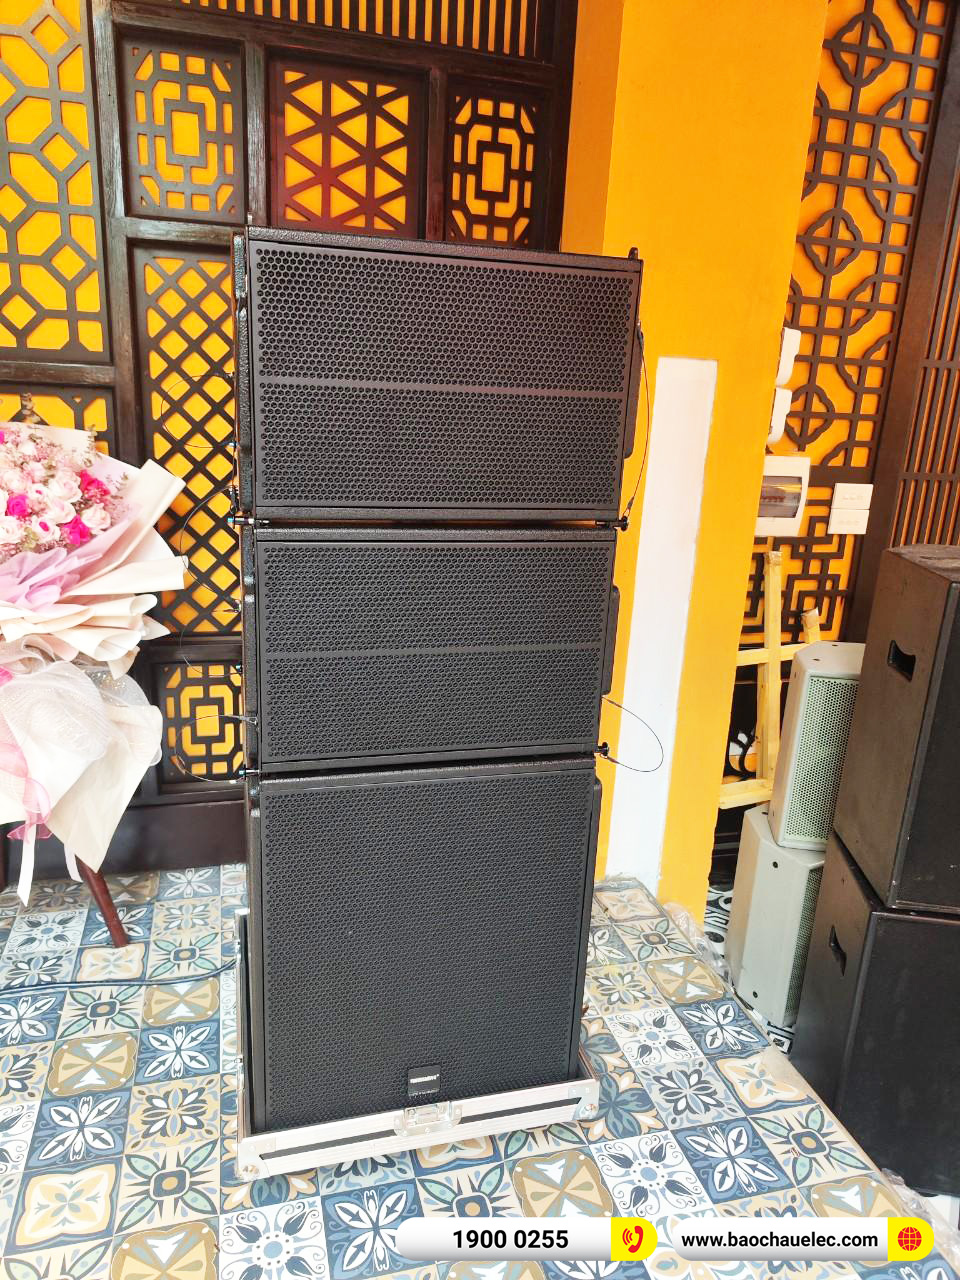 Lắp đặt dàn âm thanh Array Temeisheng cho quán Cafe An Hội An tại Hà Nội 